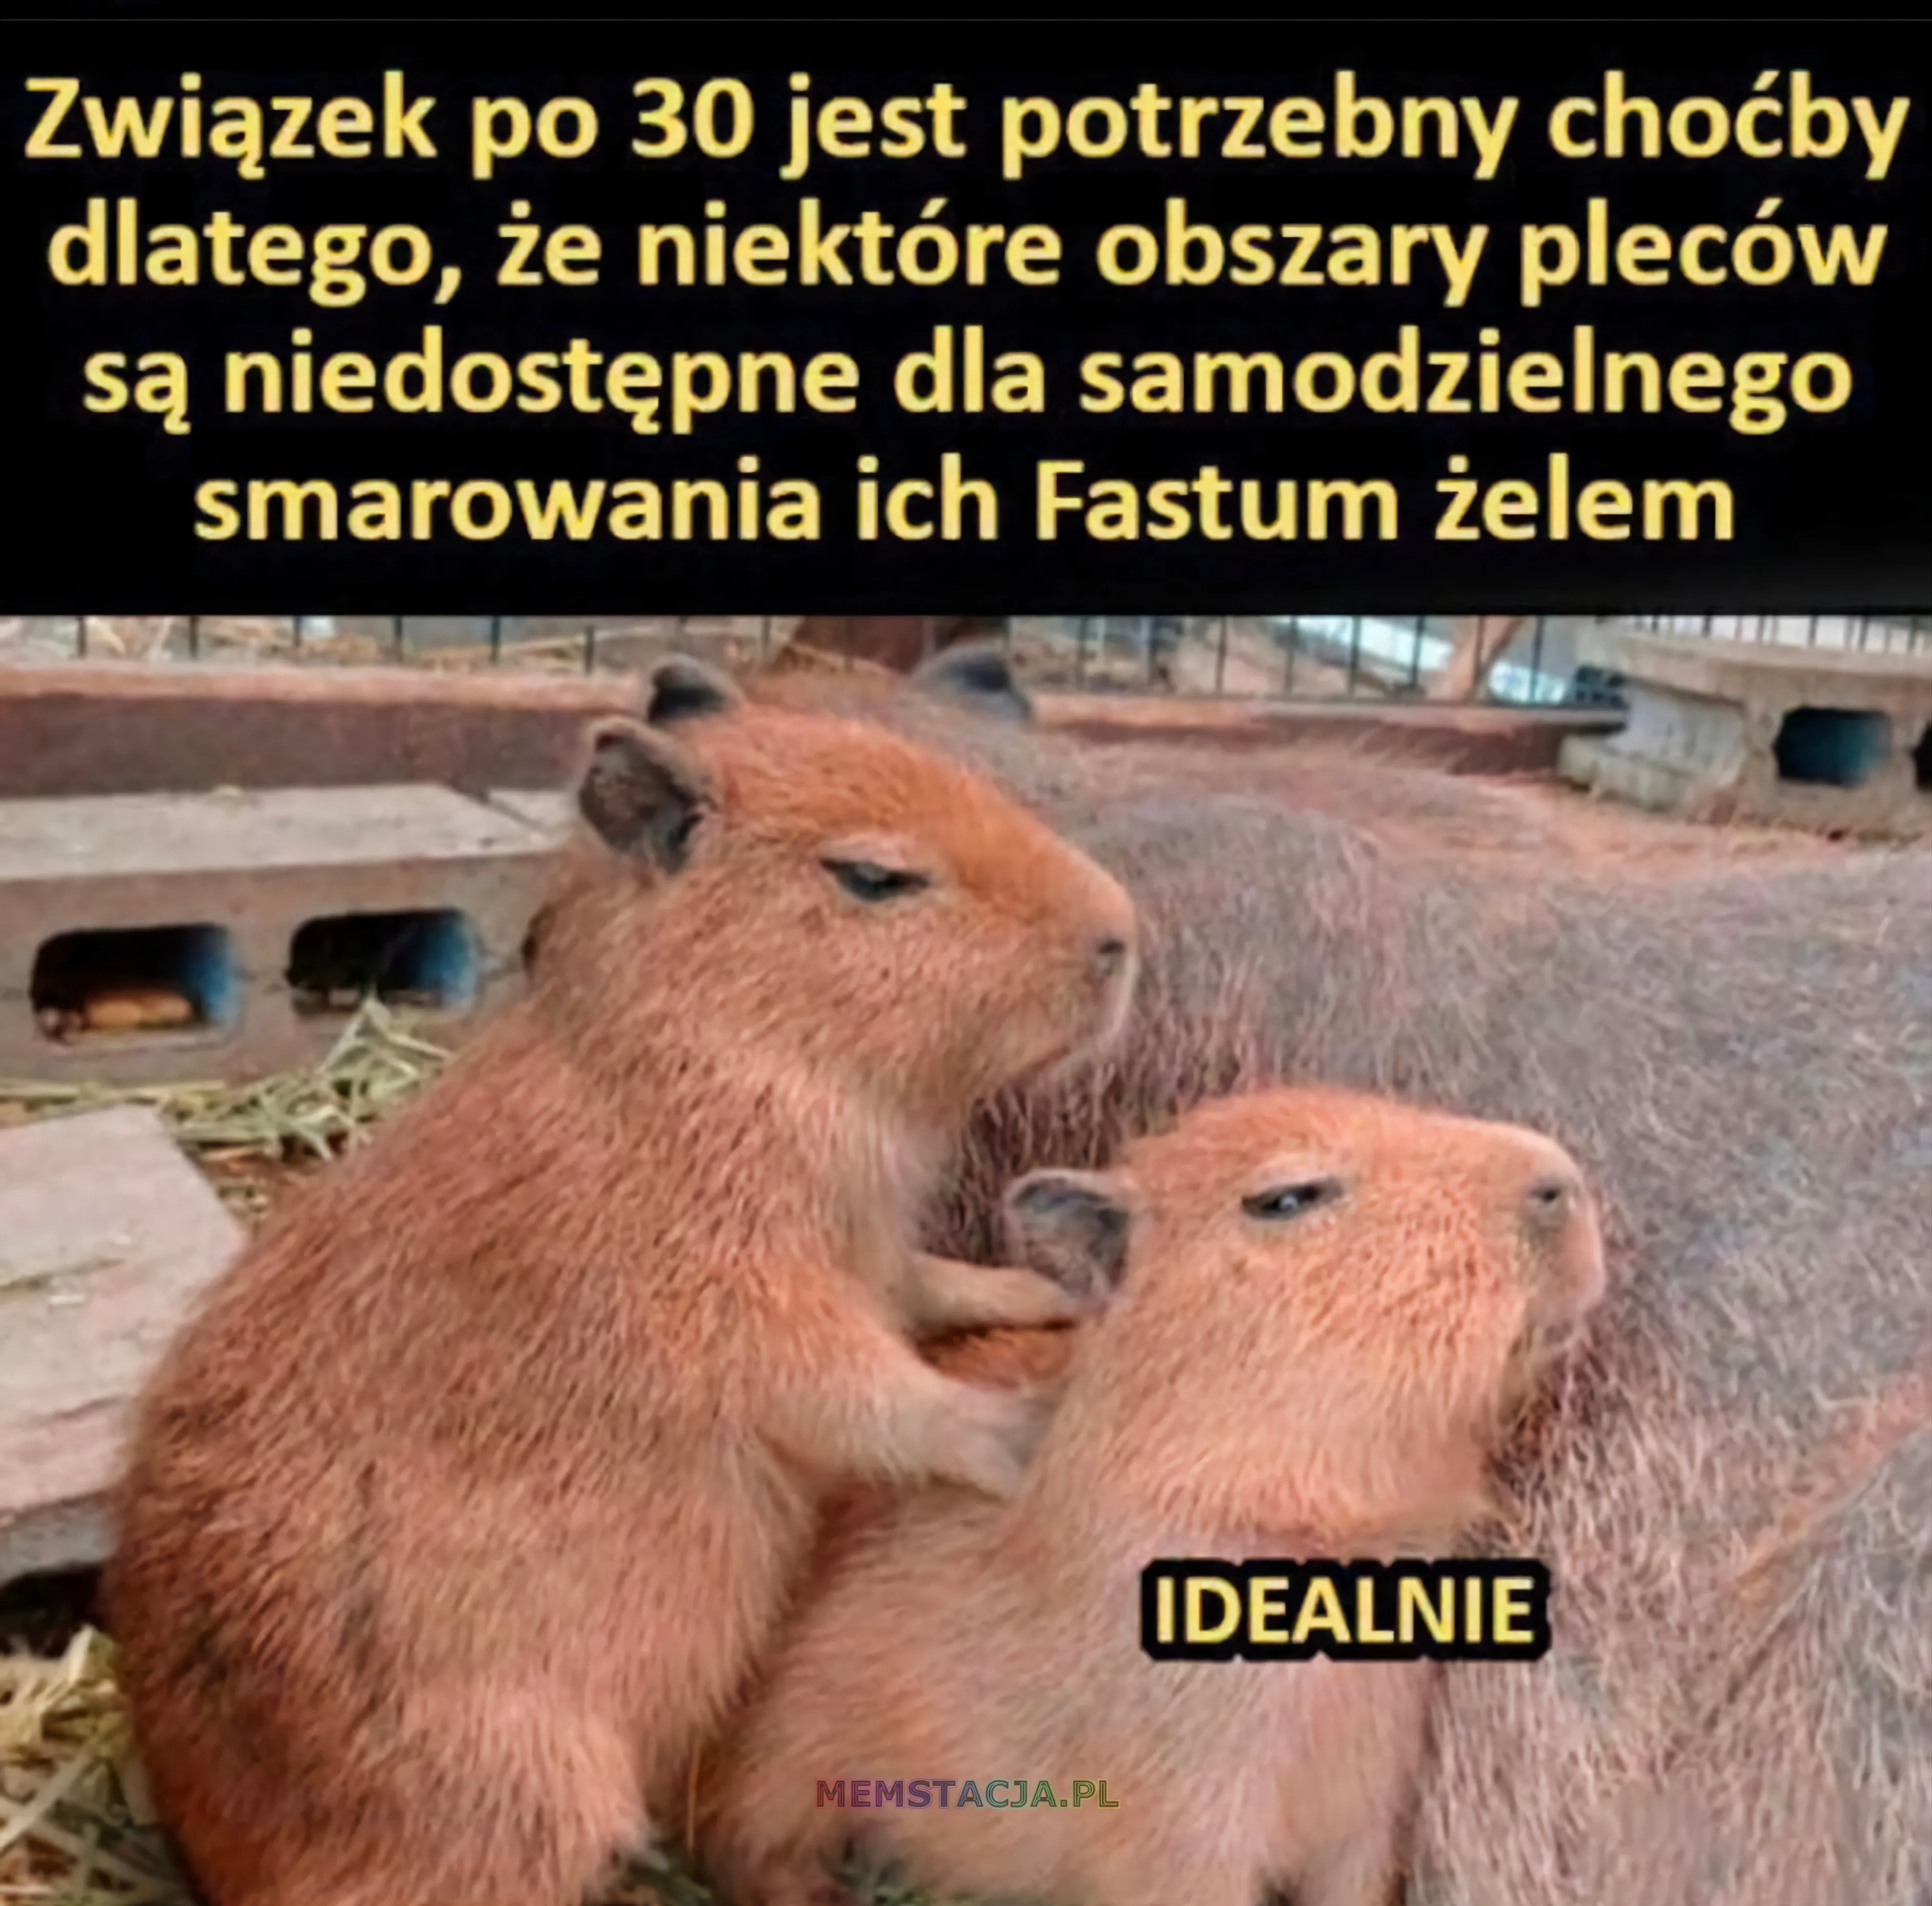 Mem z masującymi się małymi kapibarami: 'Związek po trzydziestce jest potrzebny choćby dlatego, że niektóre obszary pleców są niedostępne dla samodzielnego smarowania ich Fastum żelem'; 'Idealnie'